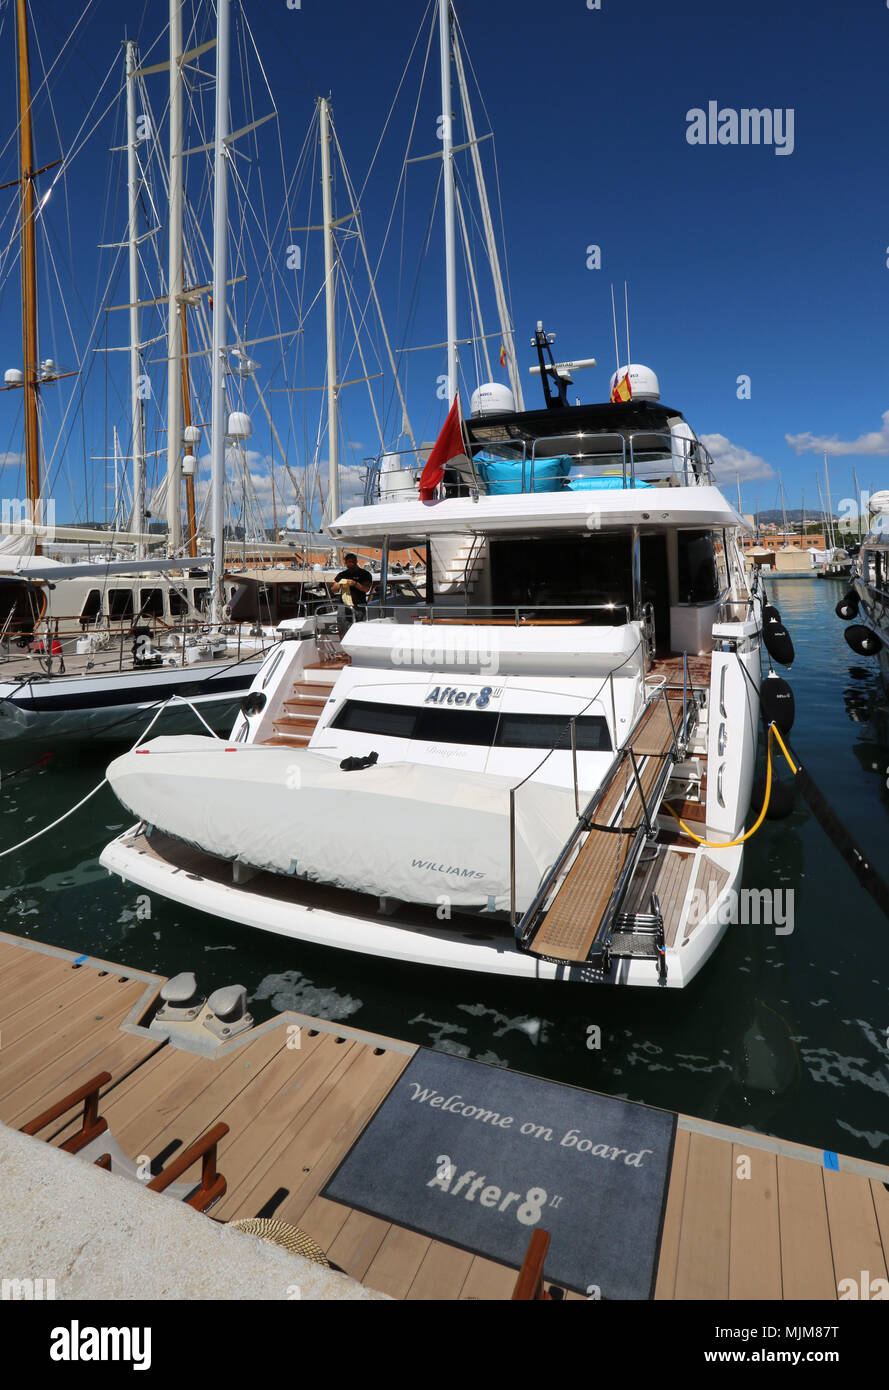 Luxury Mallorca / Majorca - Luxury charter Motor Yacht 'After 8' II (Sunseeker 26m ) - boats at Palma International Boat Show 2018 / Palma Superyacht  Stock Photo